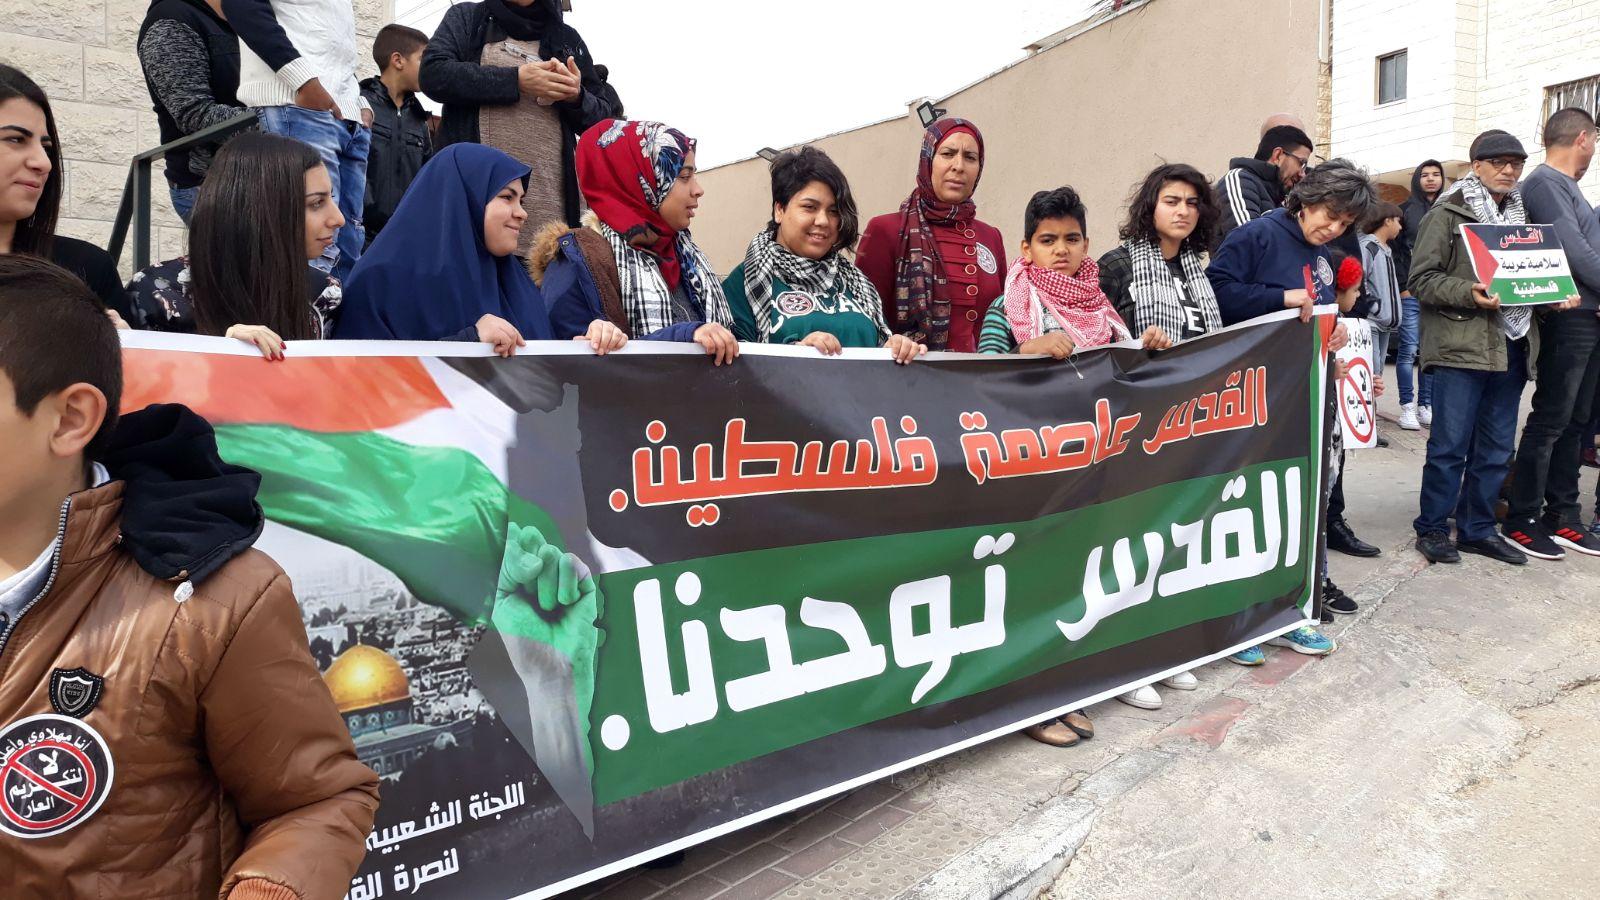  بركة: يتحتّم على فلسطينيي الداخل استقبال نتنياهو   بالصرامي على وجهه   201712281247050